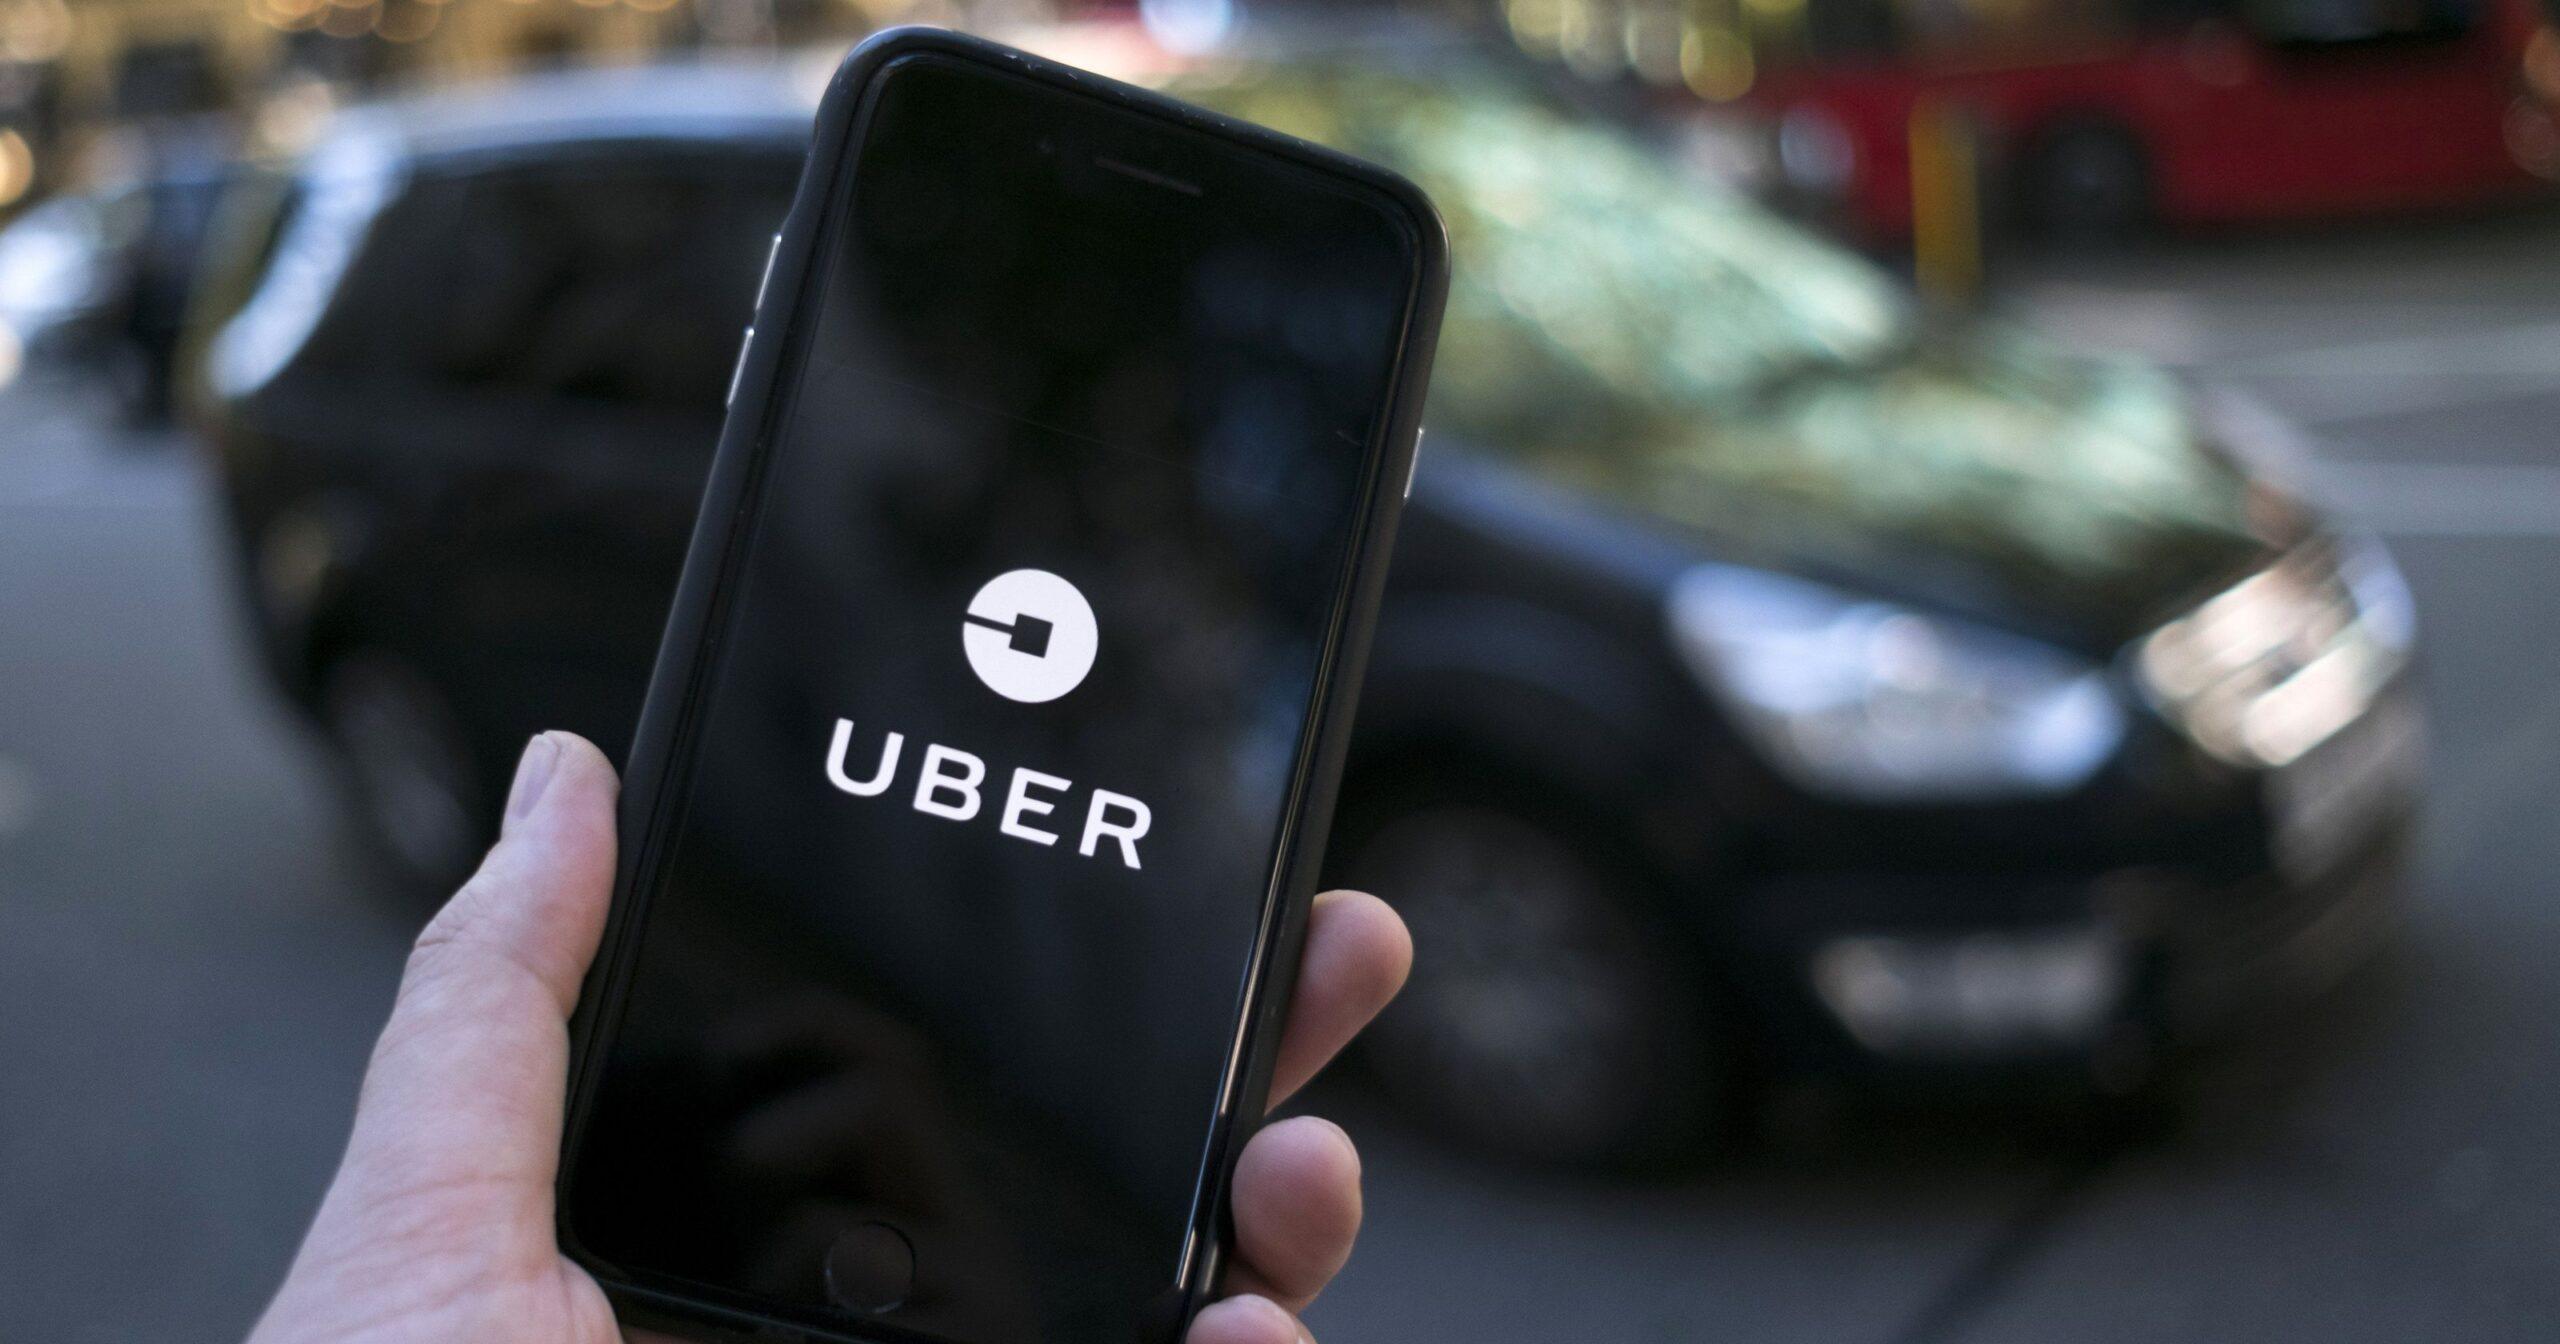 Uber e Lyft devono assumere i driver: fine dei giochi in California?